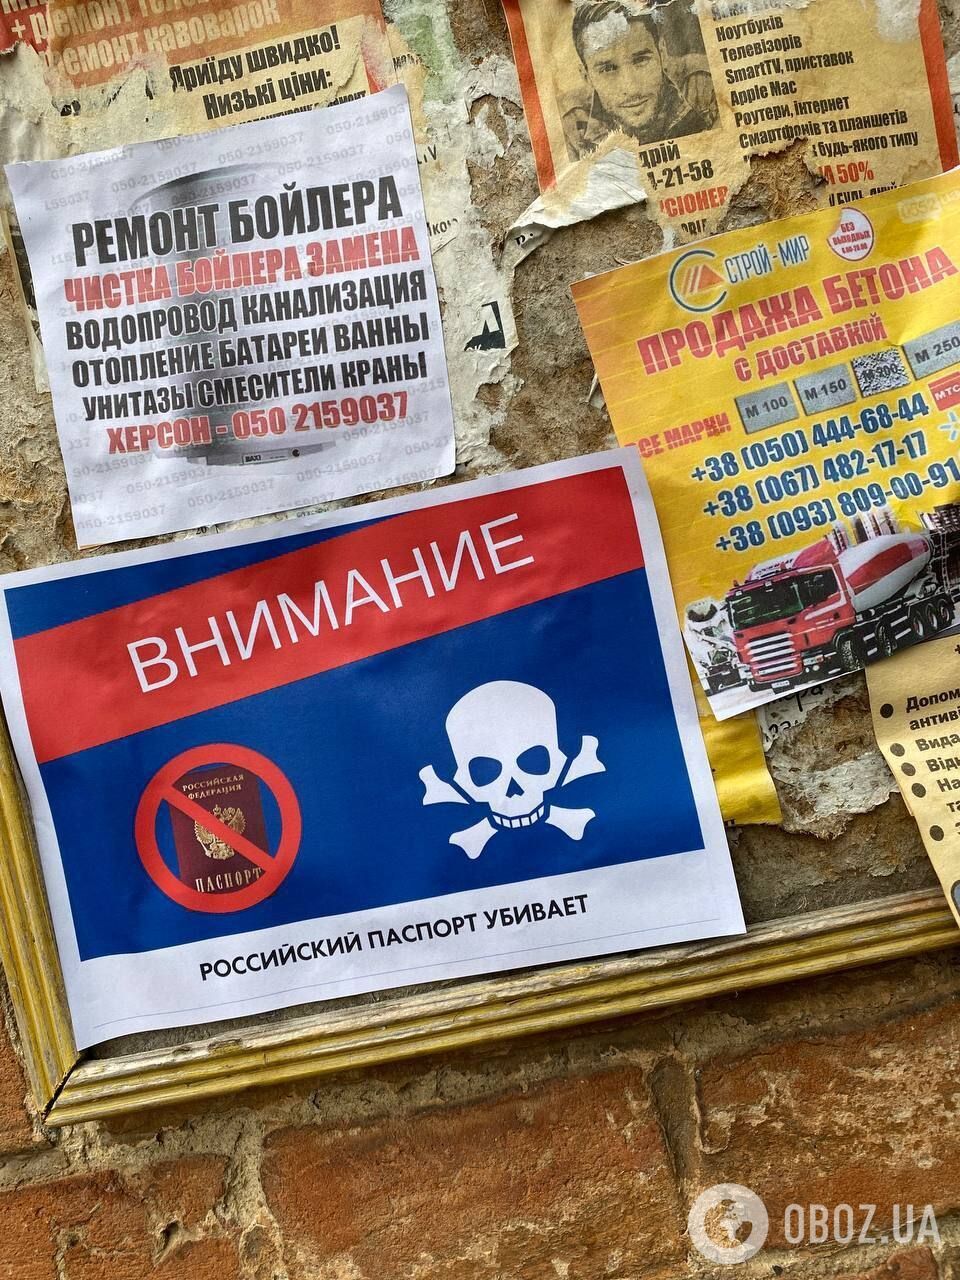 "Российский паспорт убивает": на оккупированной Херсонщине устроили бойкот захватчикам. Фото